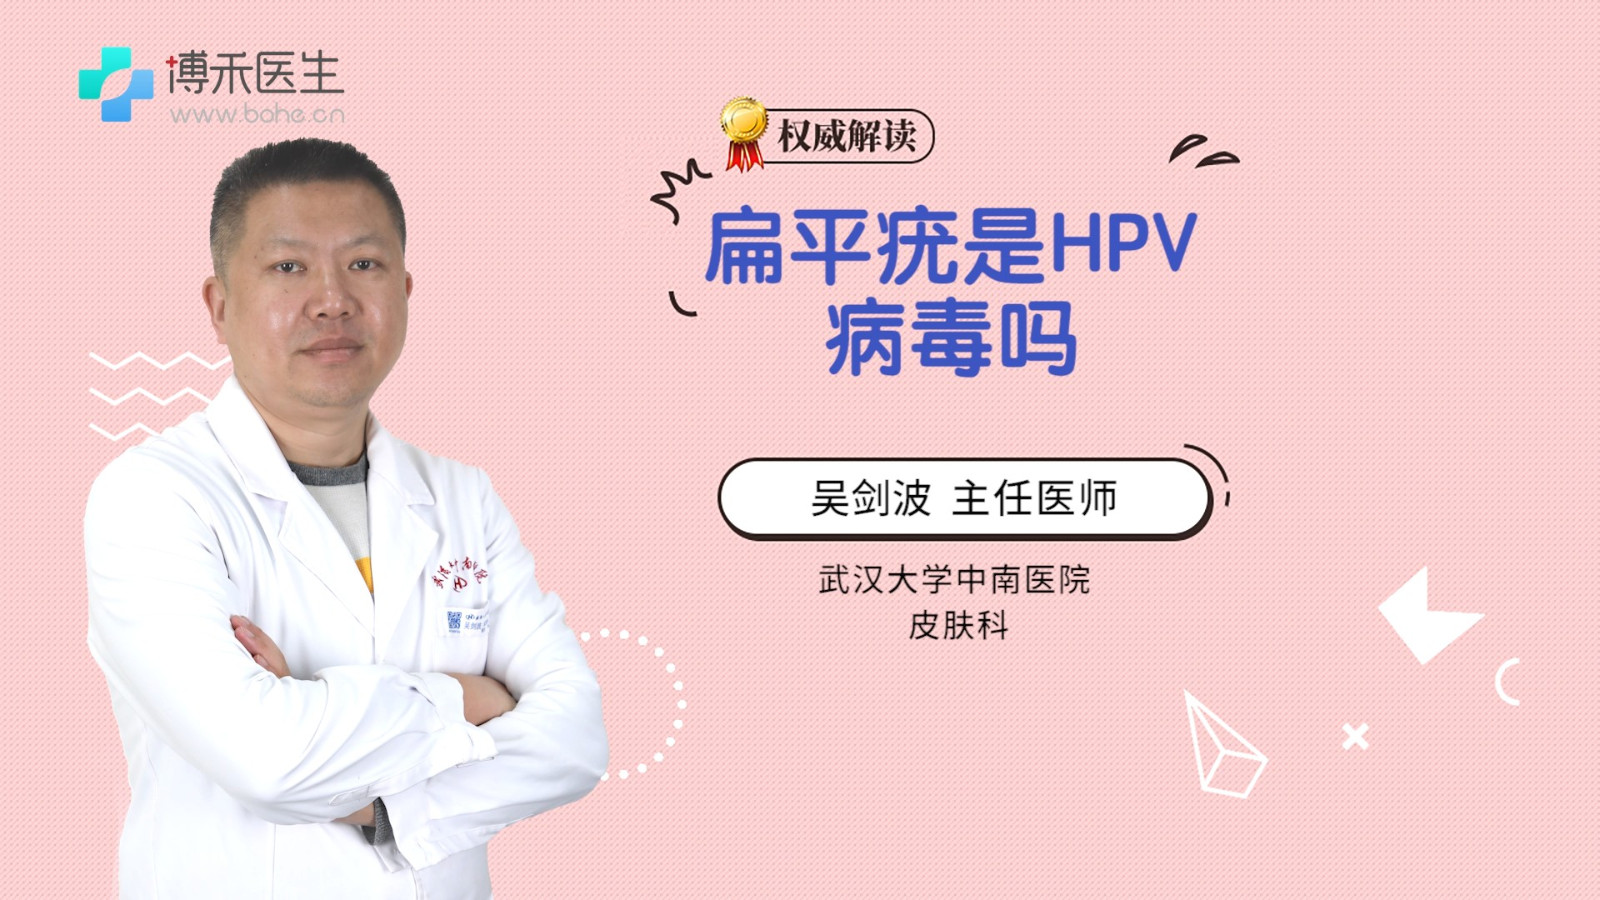 扁平疣是HPV病毒吗